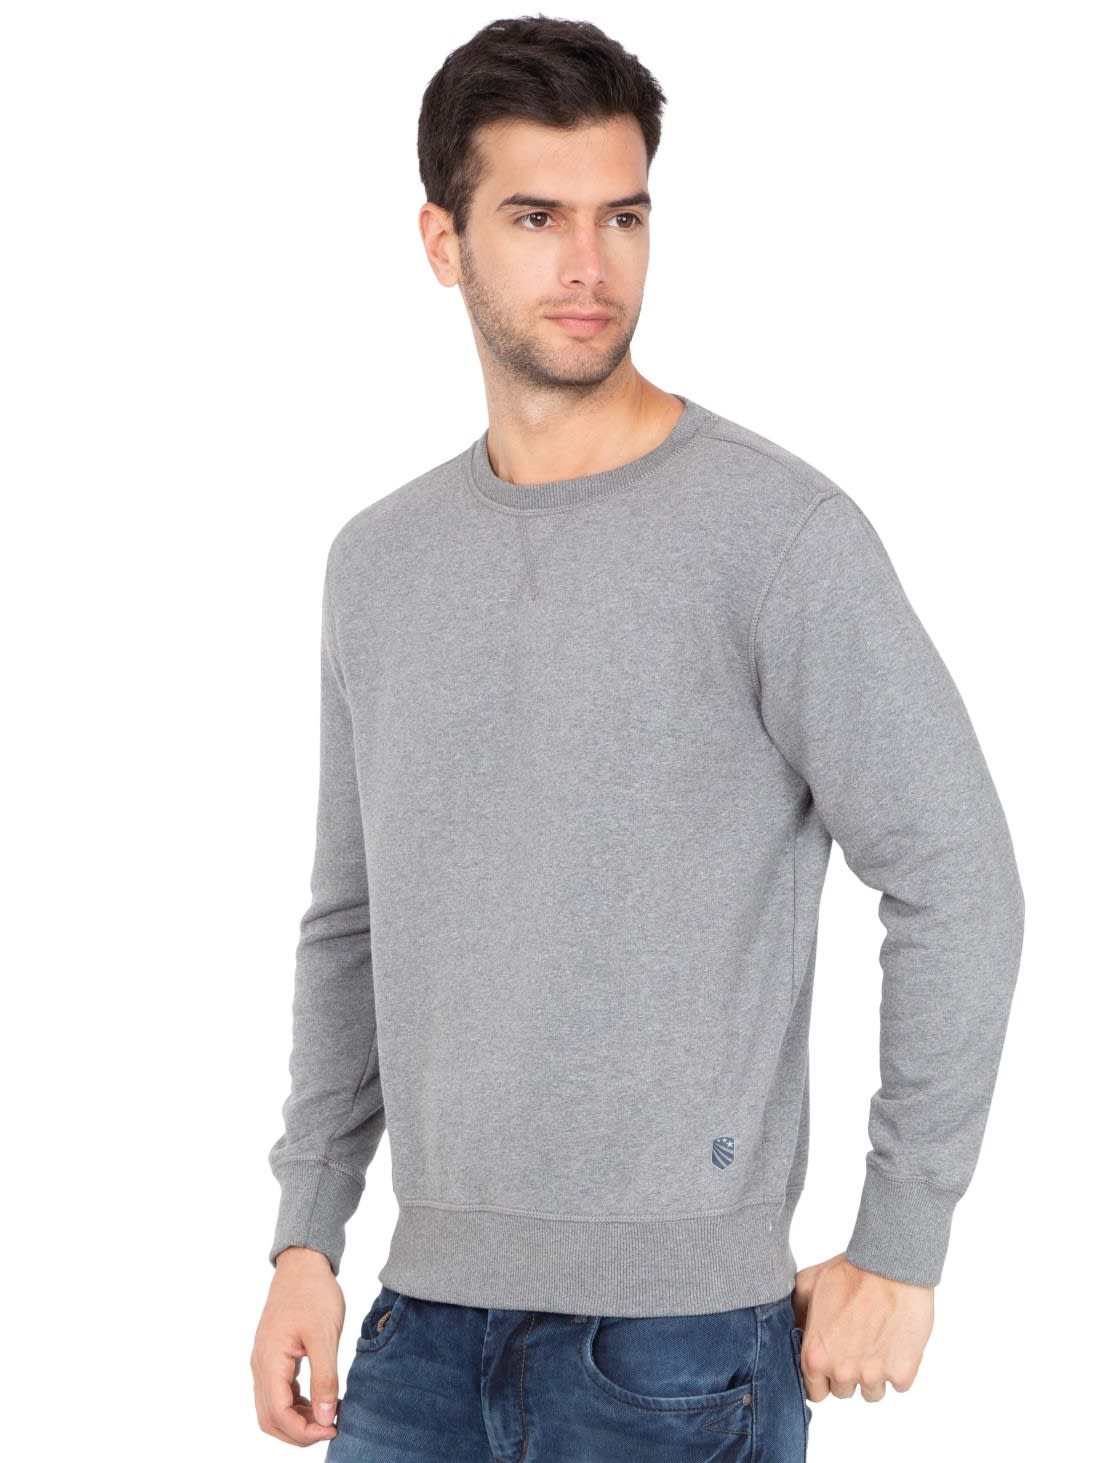 Download Jockey Men Apparel Tops | Grey Melange Sweatshirt